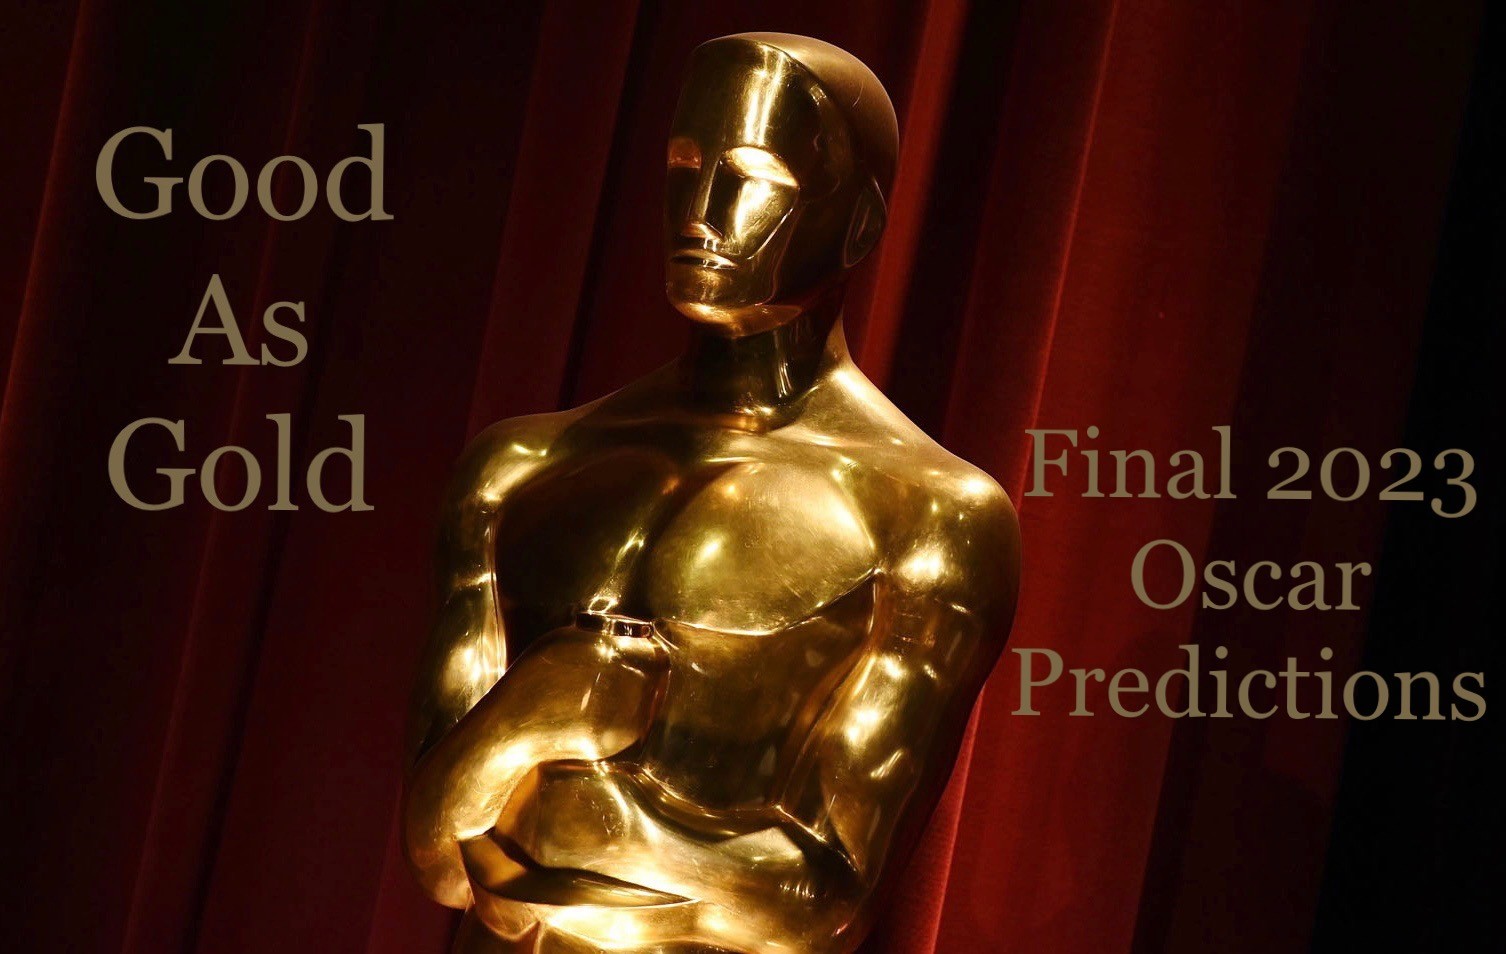 Good As Gold Final 2023 Oscar Predictions Awardsdaily